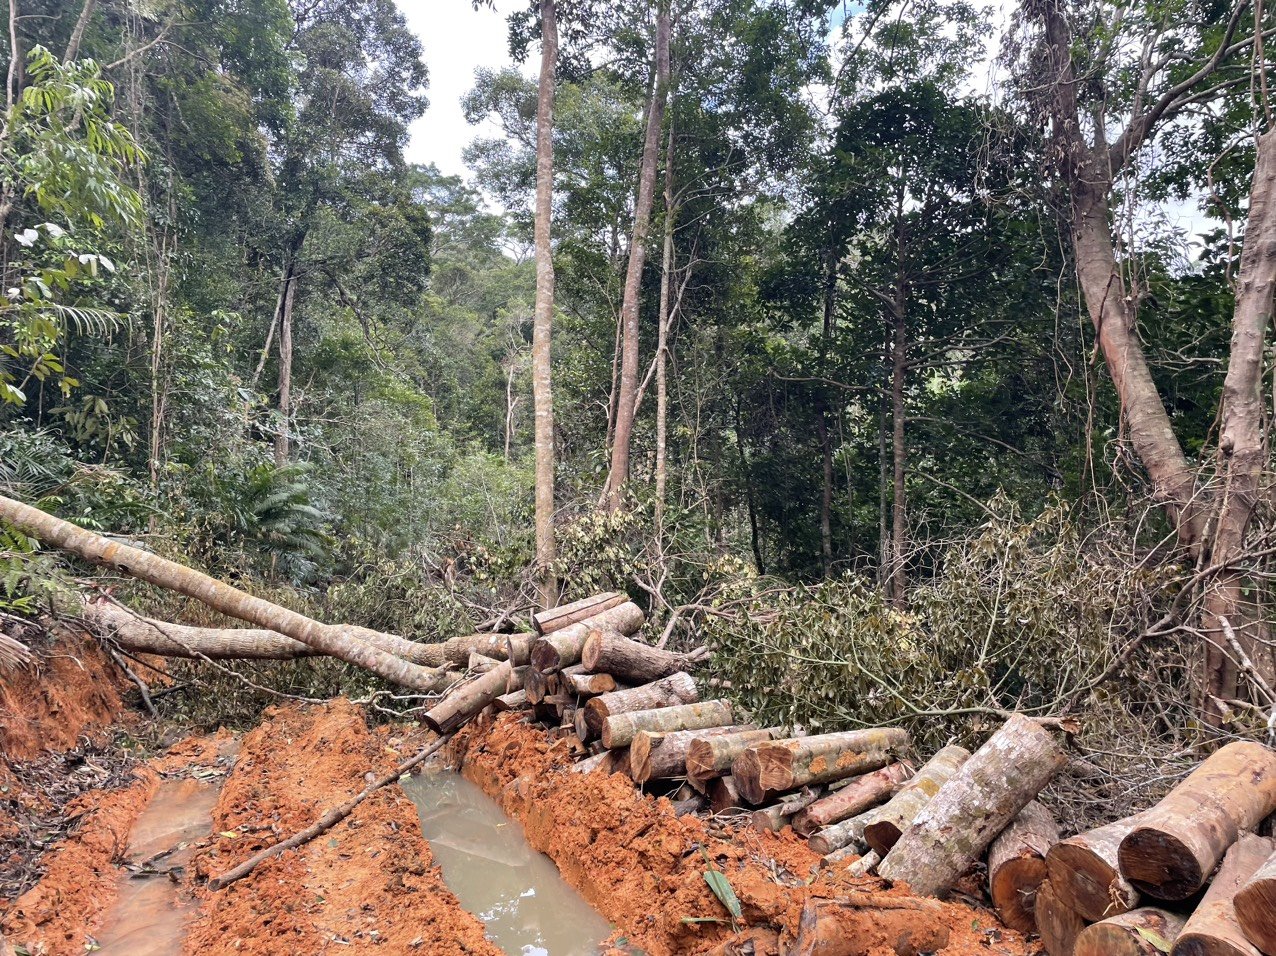 Nhều lóng gỗ được phát hiện tại hiện trường khai thác rừng trái phép - Ảnh: K.L